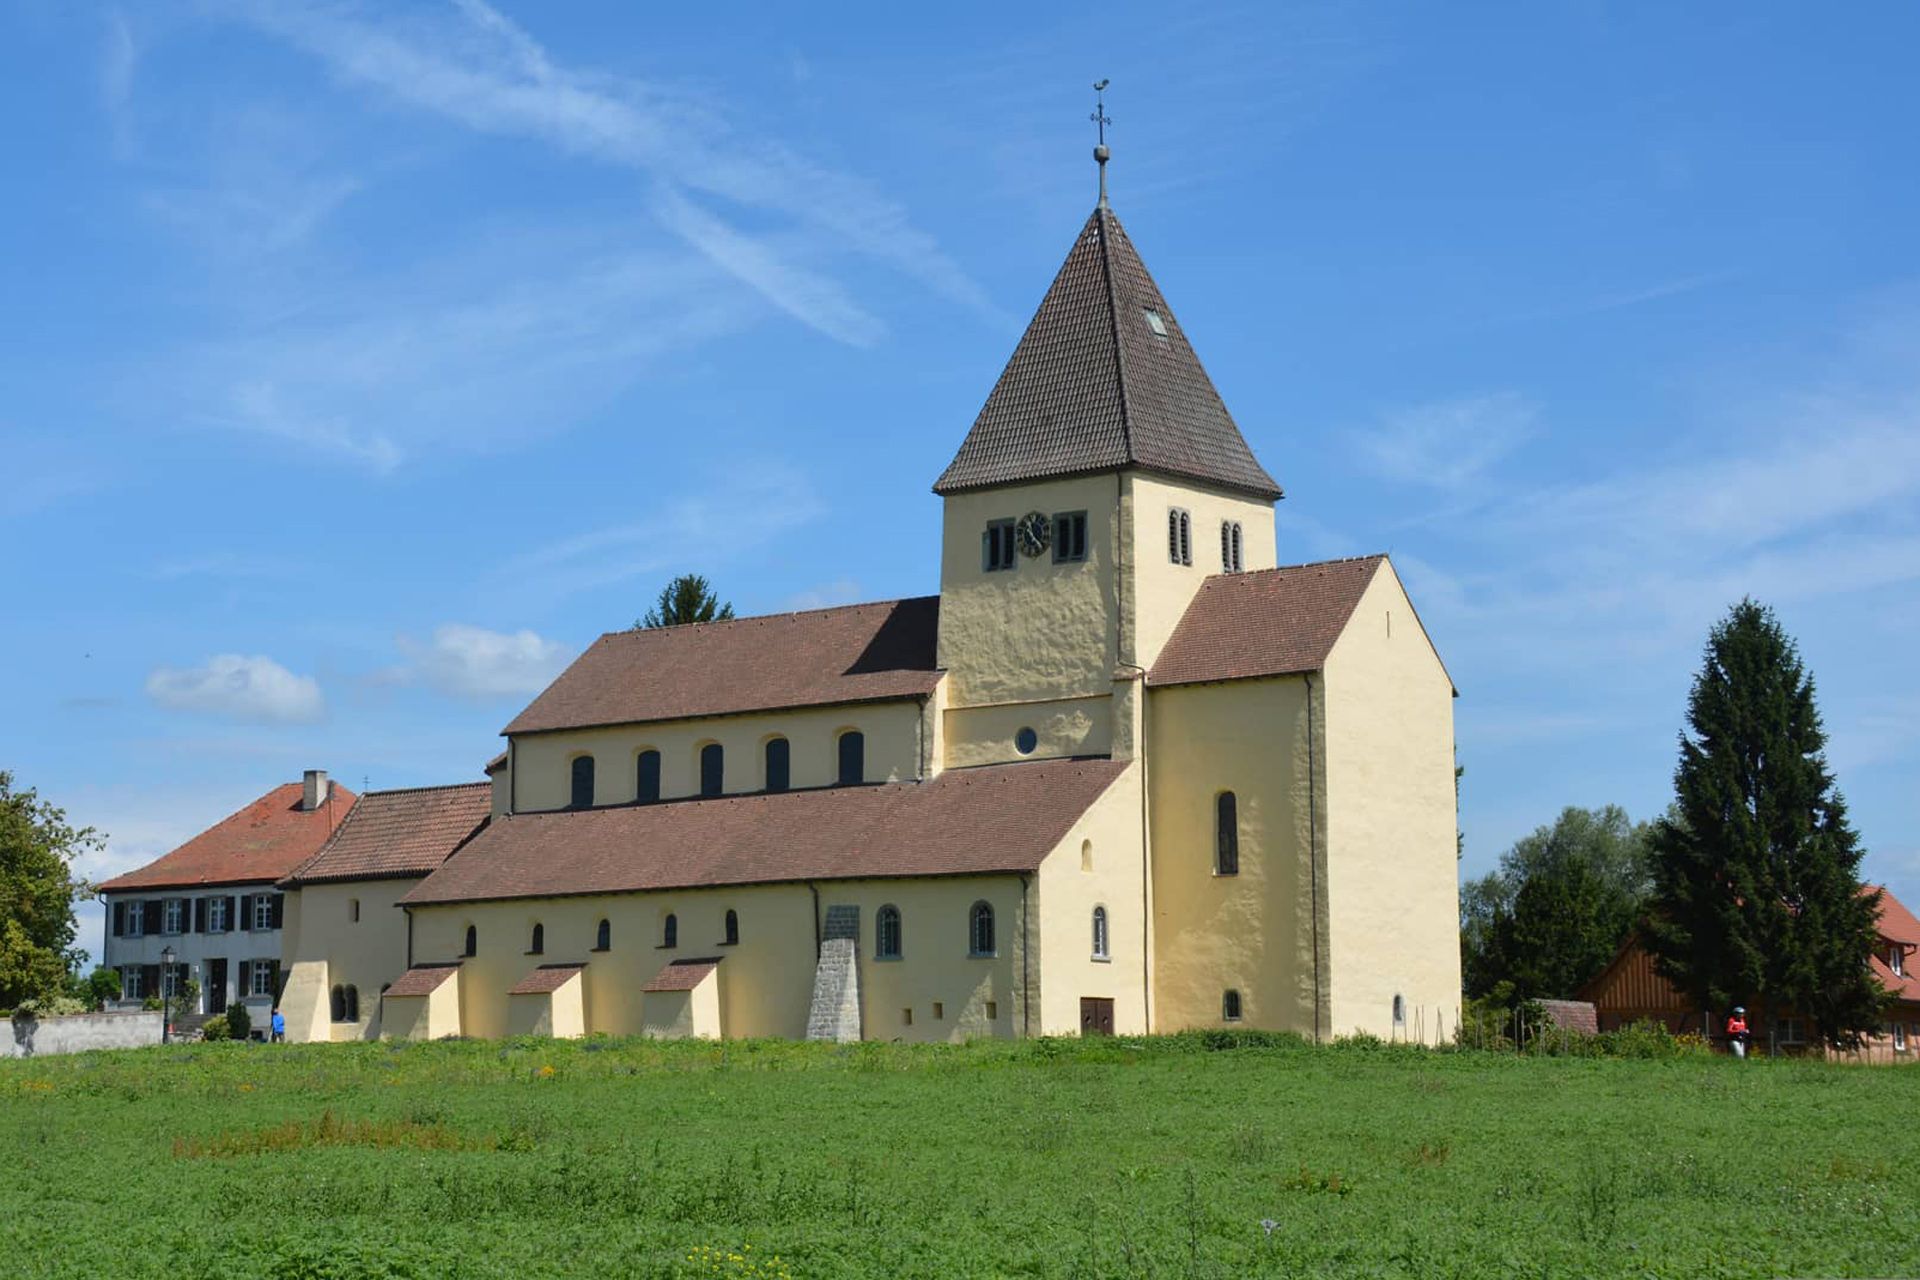 Konstanz en kloostereiland Reichenau i.s.m. Vrije Academie